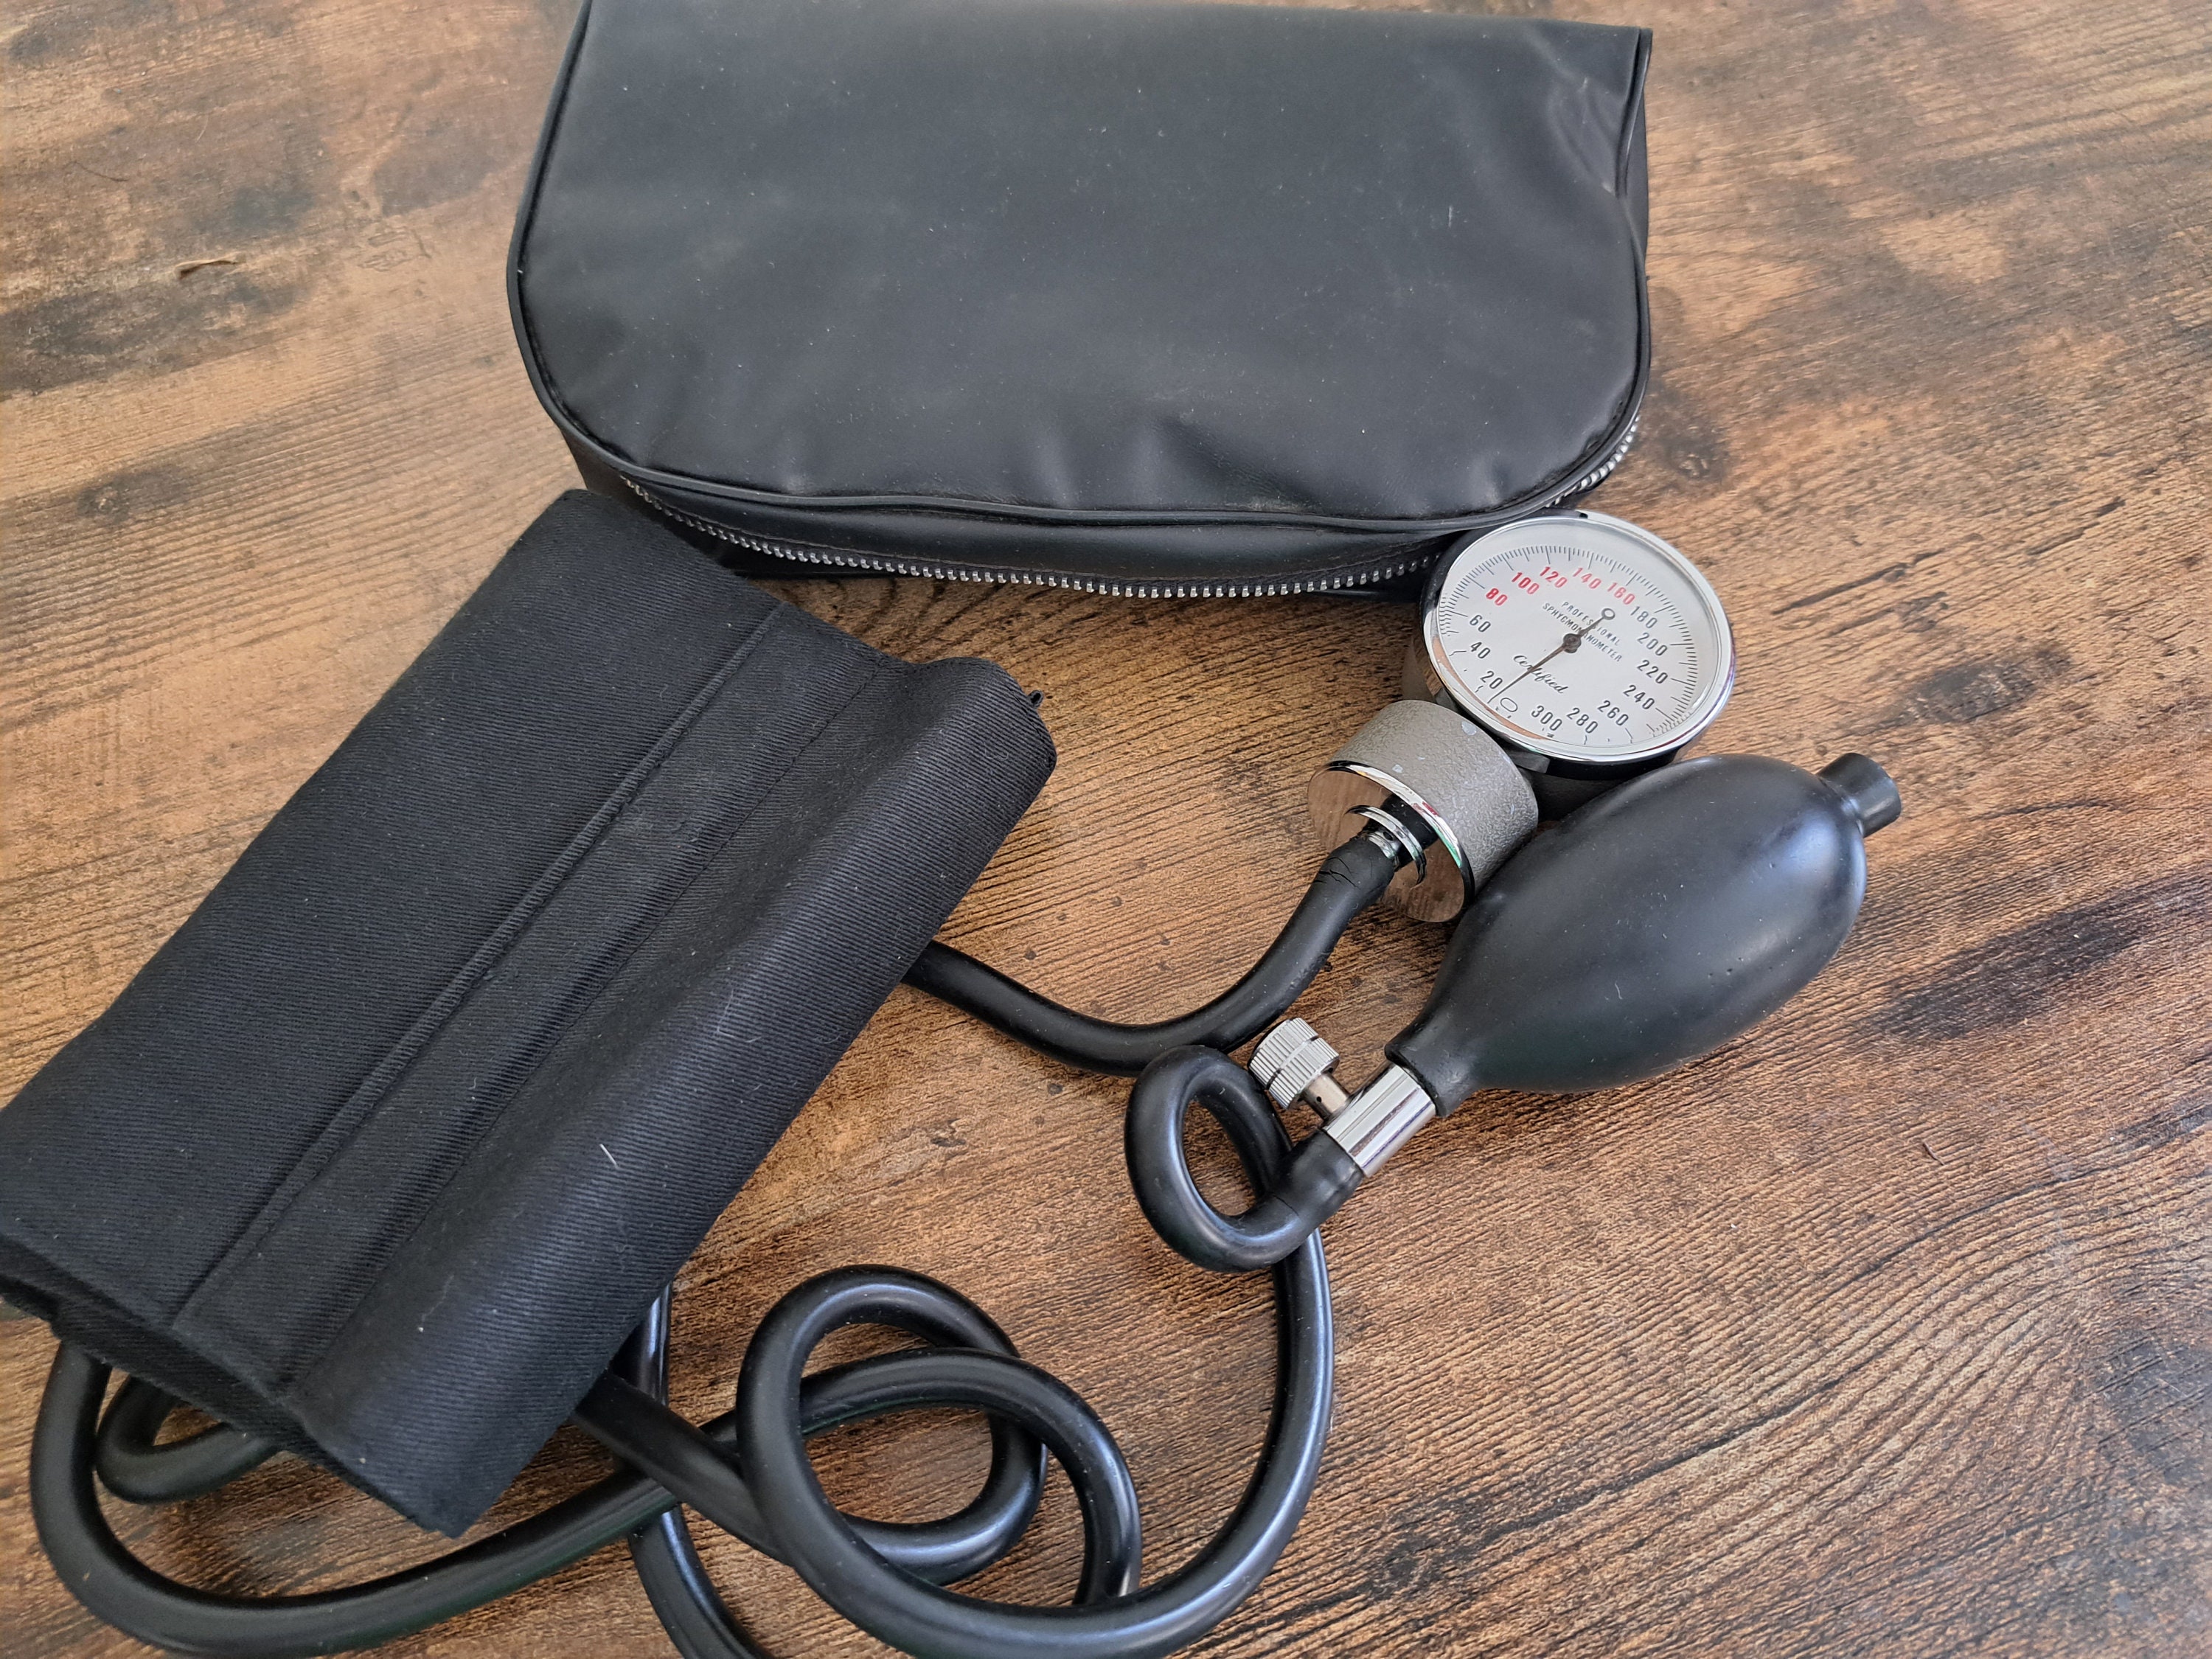 Acheter Montre manuelle de pression artérielle avec stéthoscope, tensiomètre  à bras